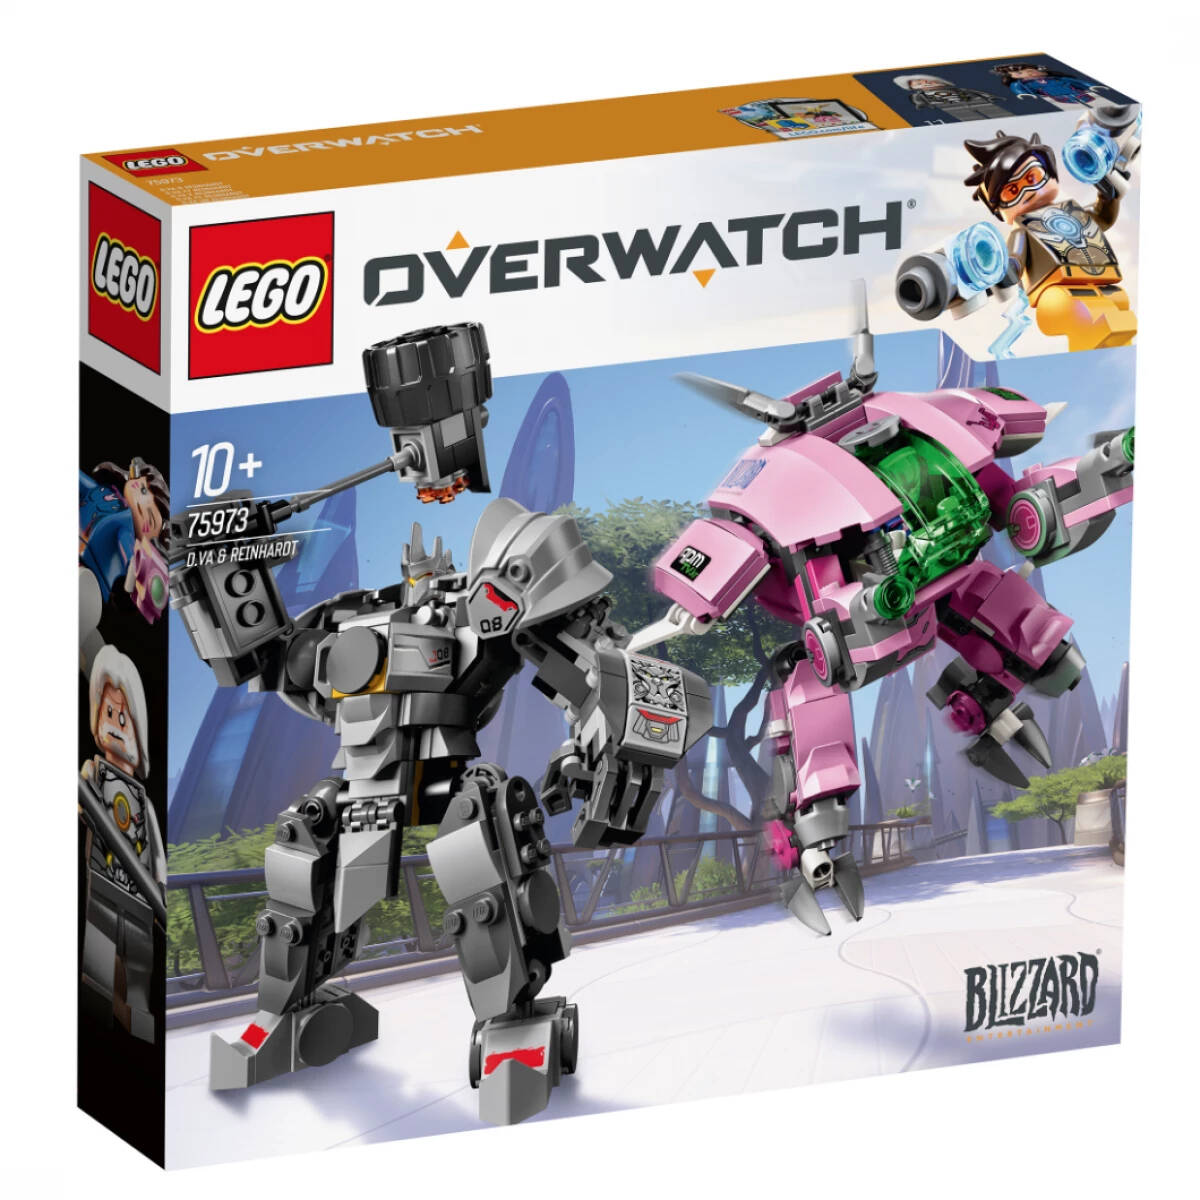 Конструктор LEGO Overwatch 75973 Д.Ва и Ренхардт, 455 дет overwatch герой нумбани